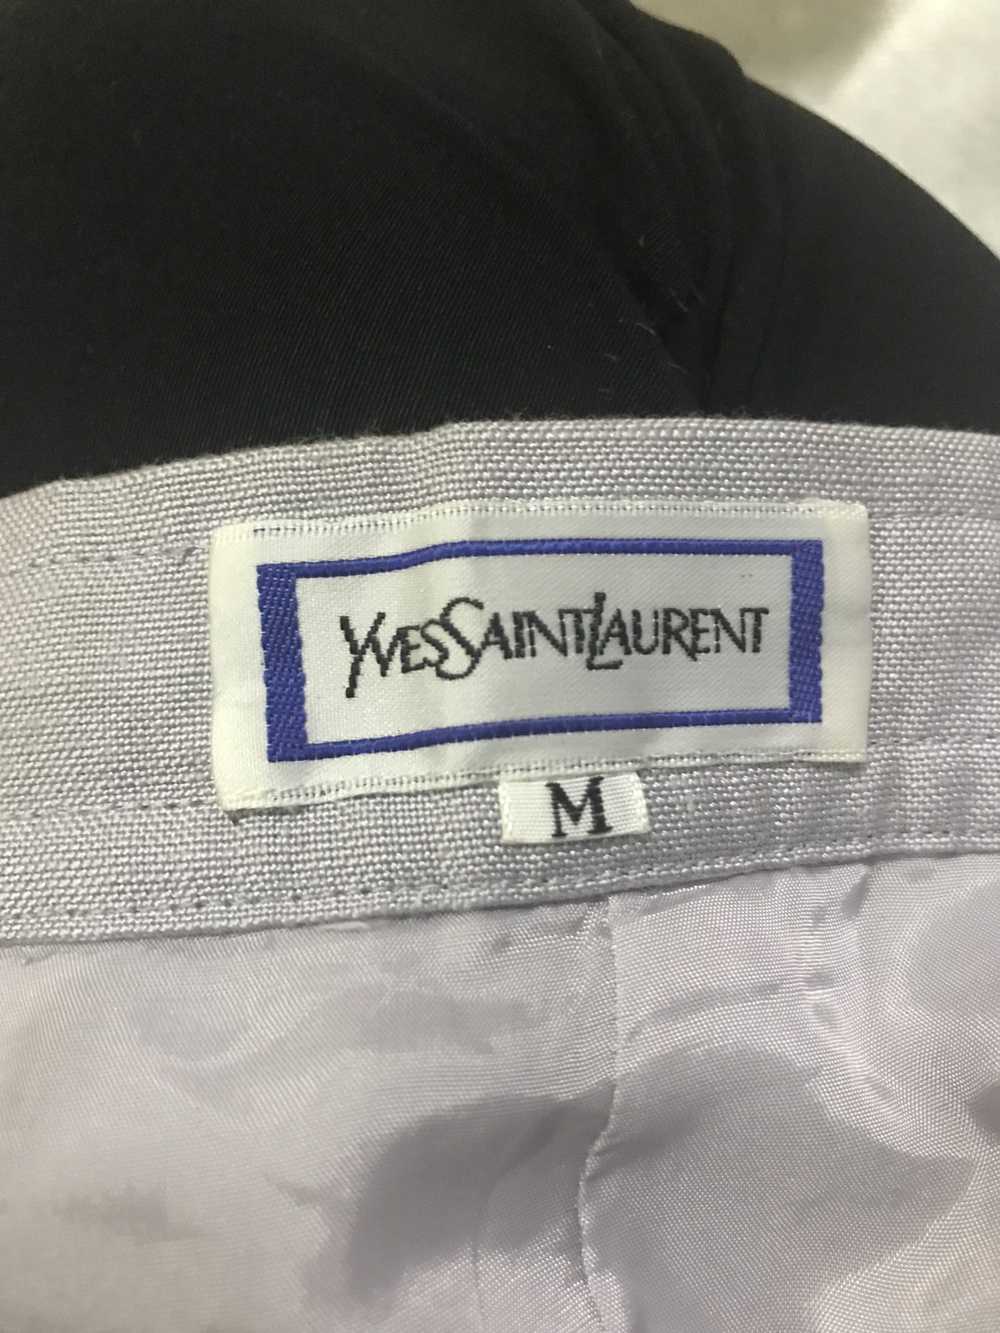 Yves Saint Laurent Yvessaintlaurent skirt - image 4